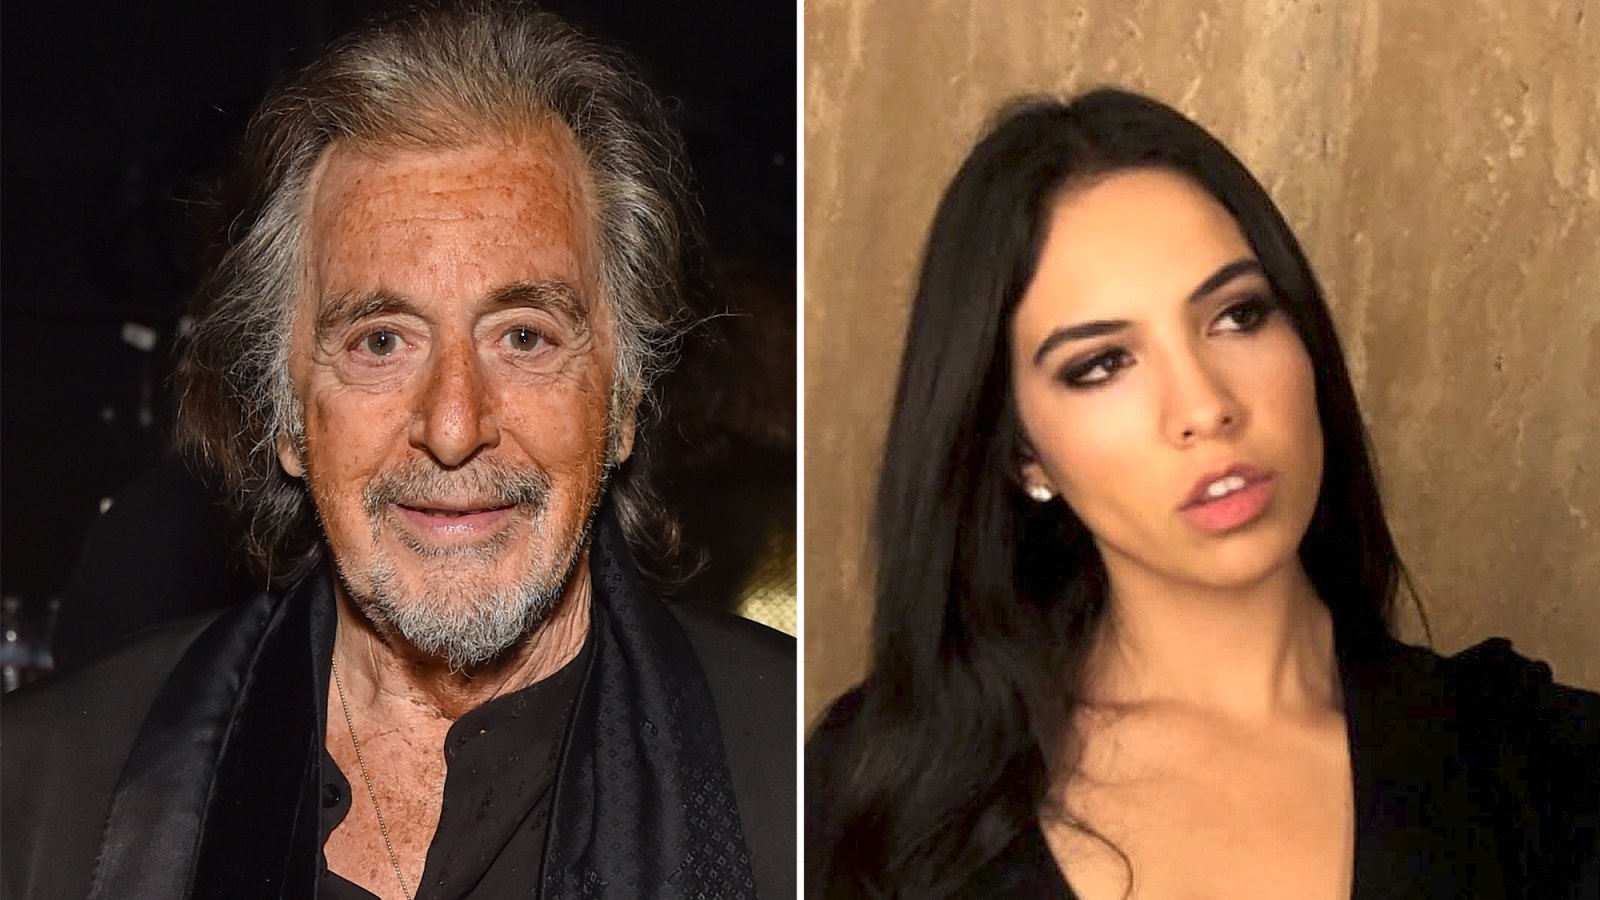 Al Pacino and Girlfriend Noor Alfallah-s Relationship Timeline